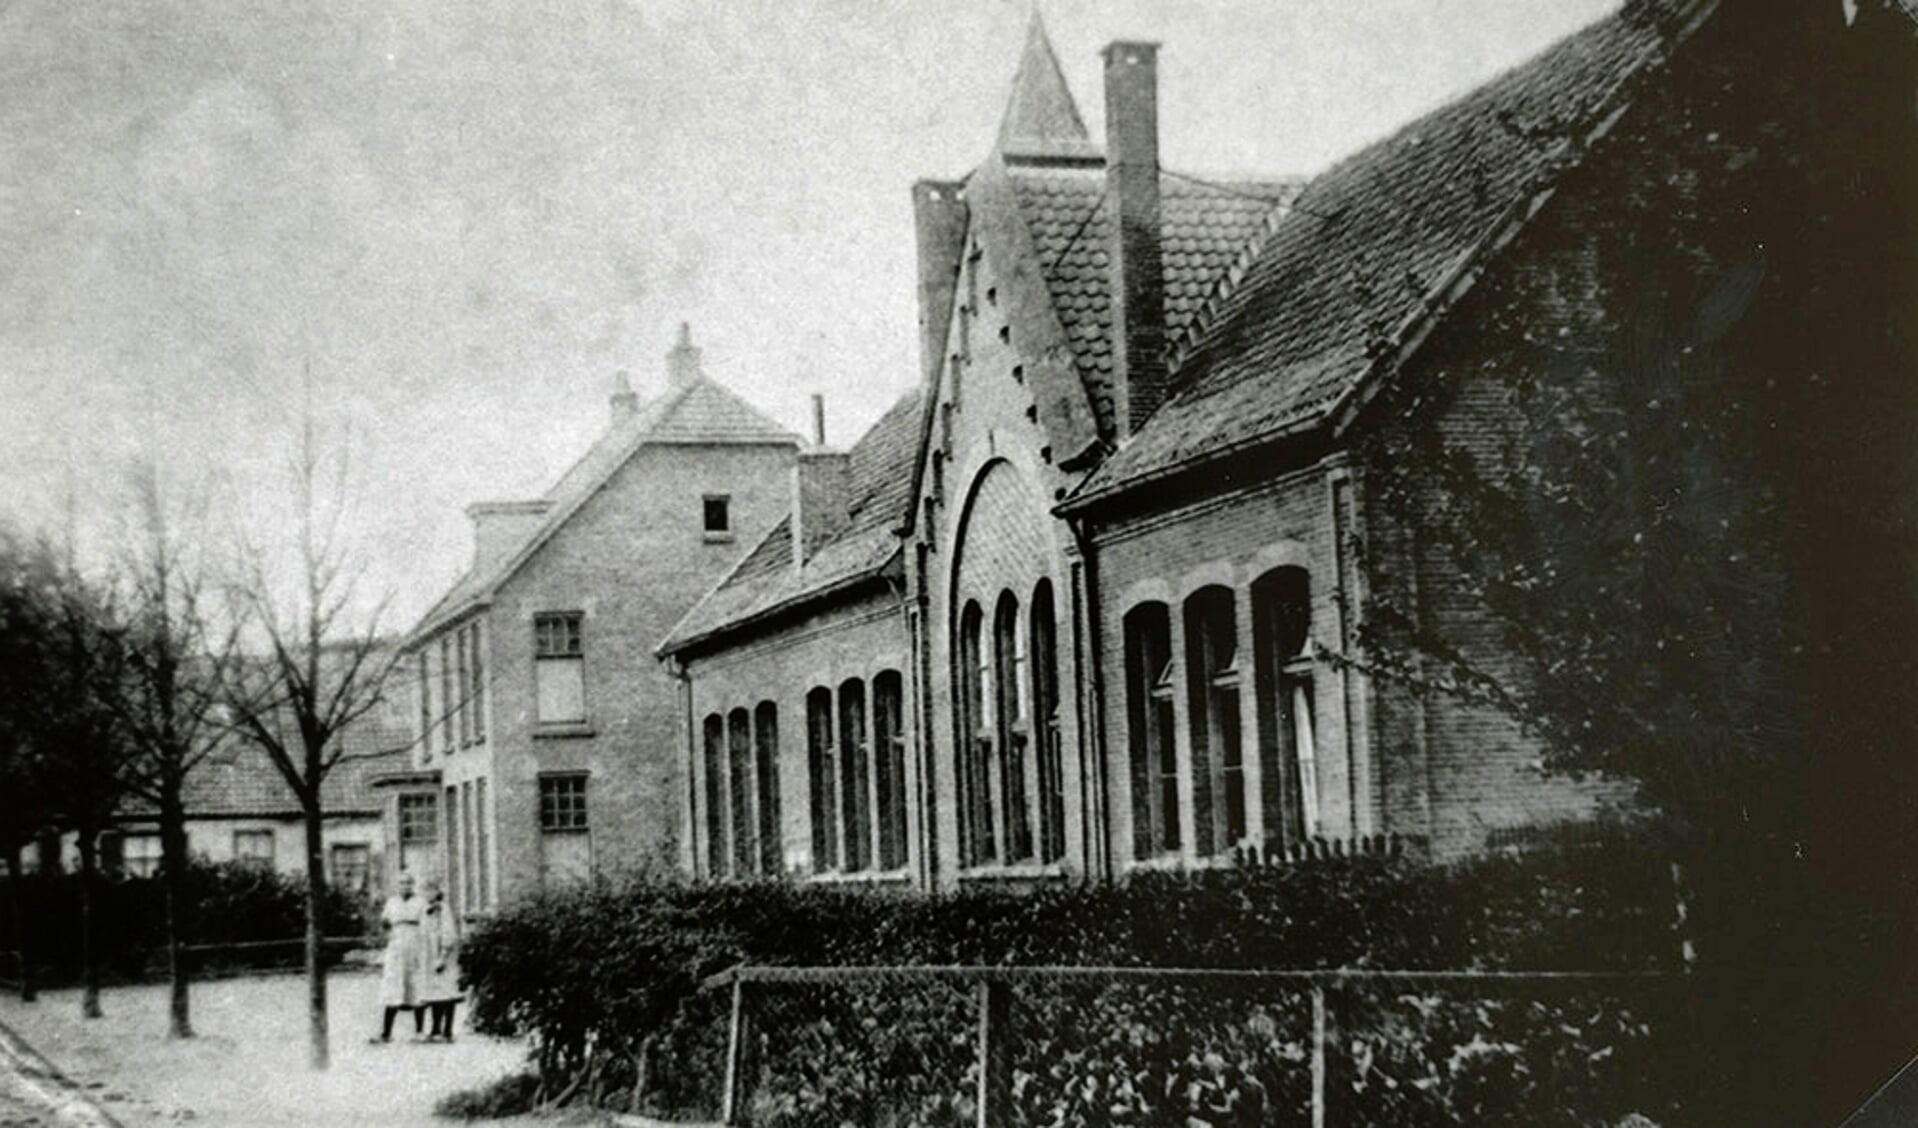 Oude Landbouw/VGLO school.